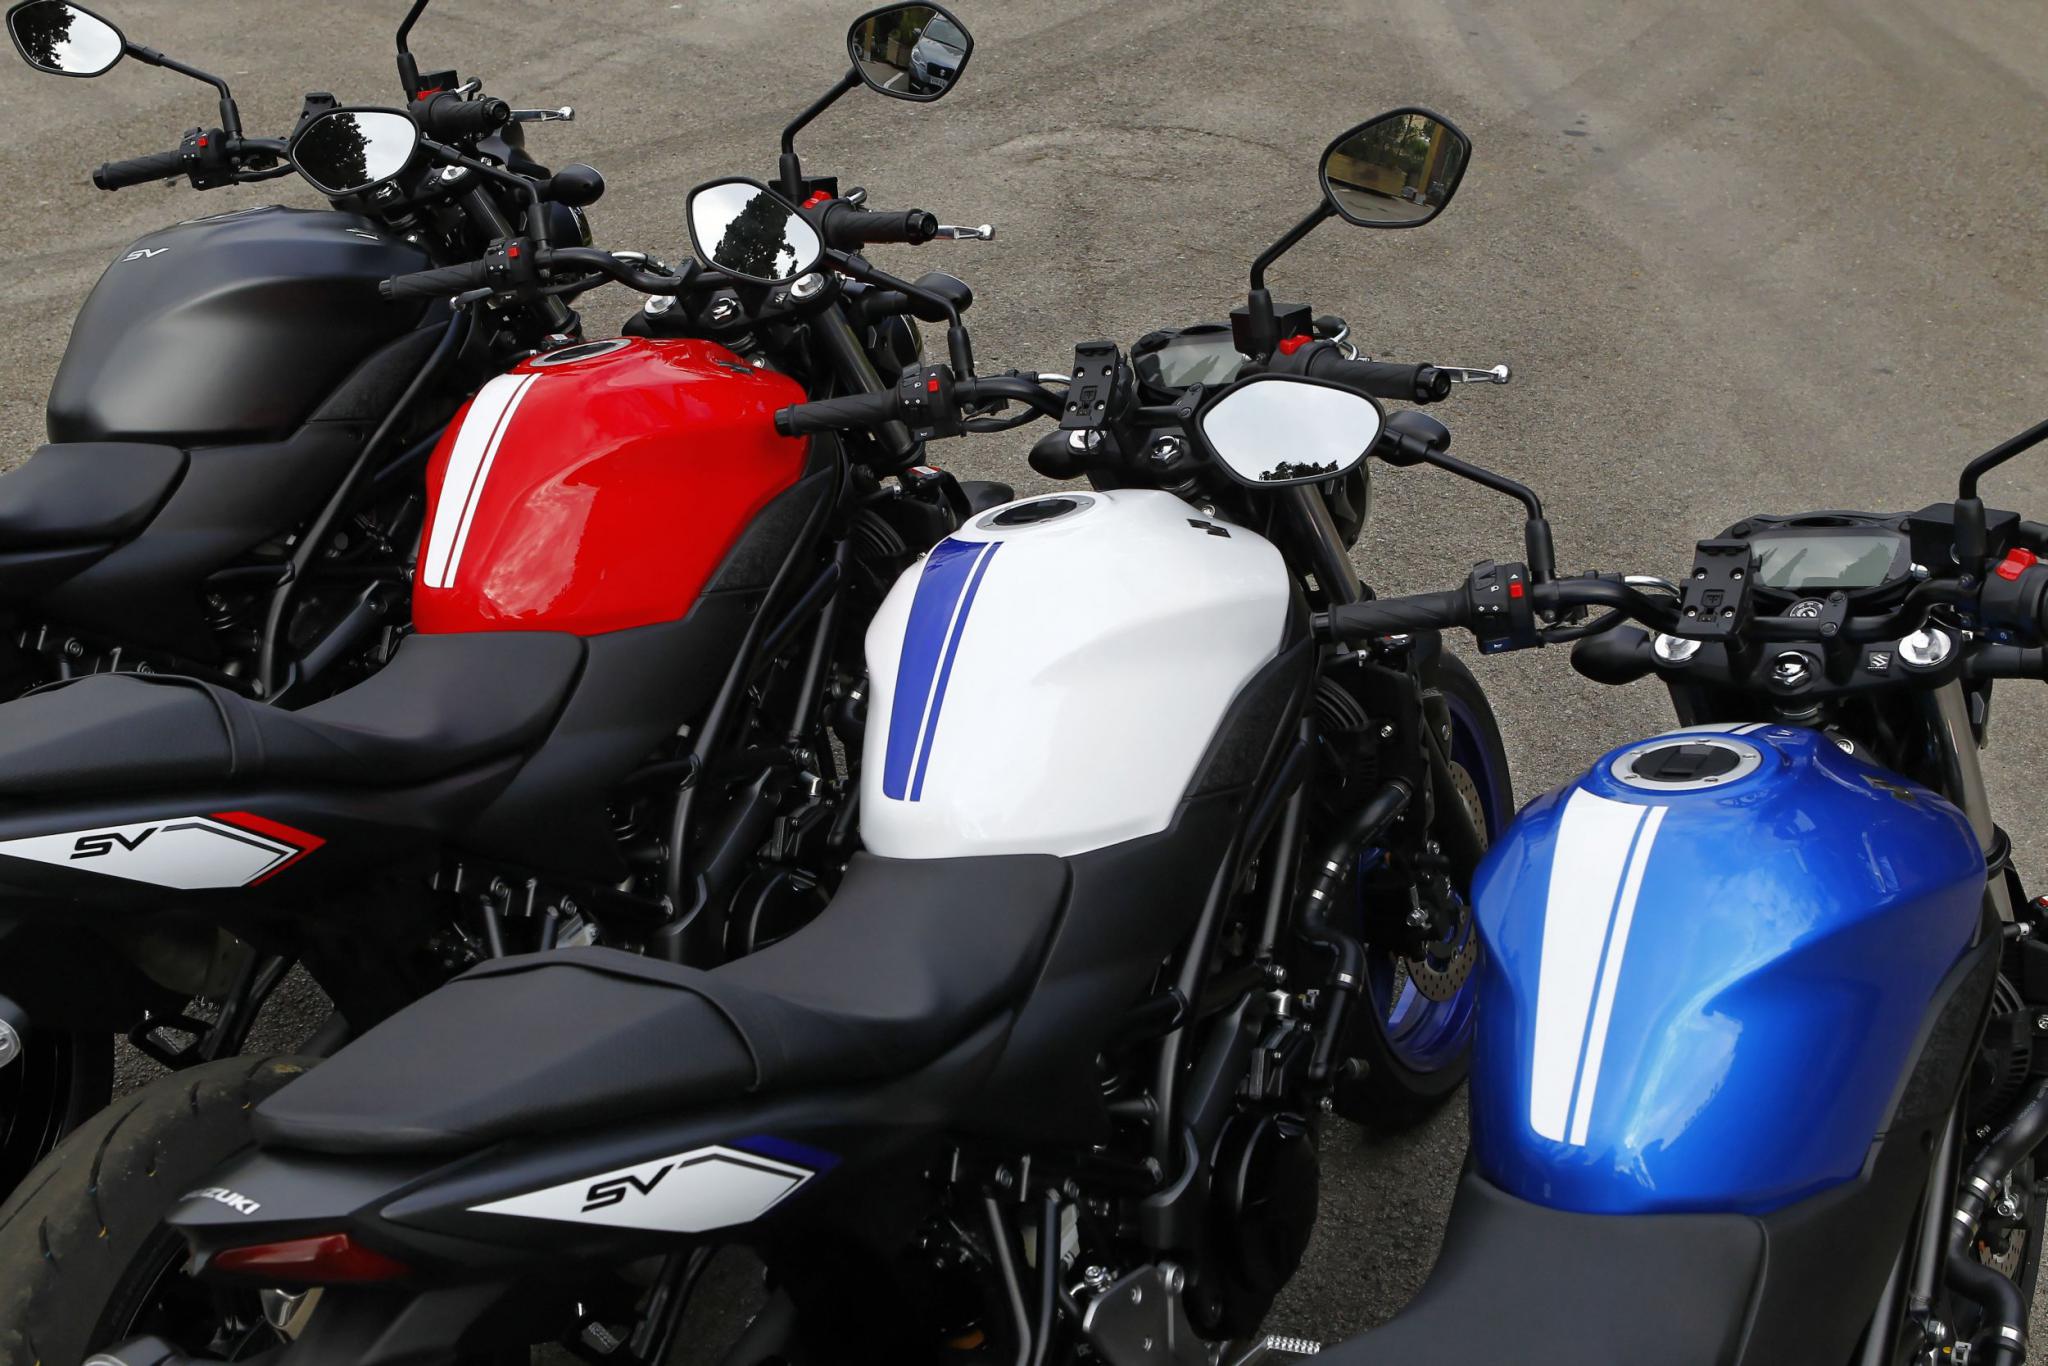 Suzuki SV650 2016 Test Motorrad Fotos & Motorrad Bilder